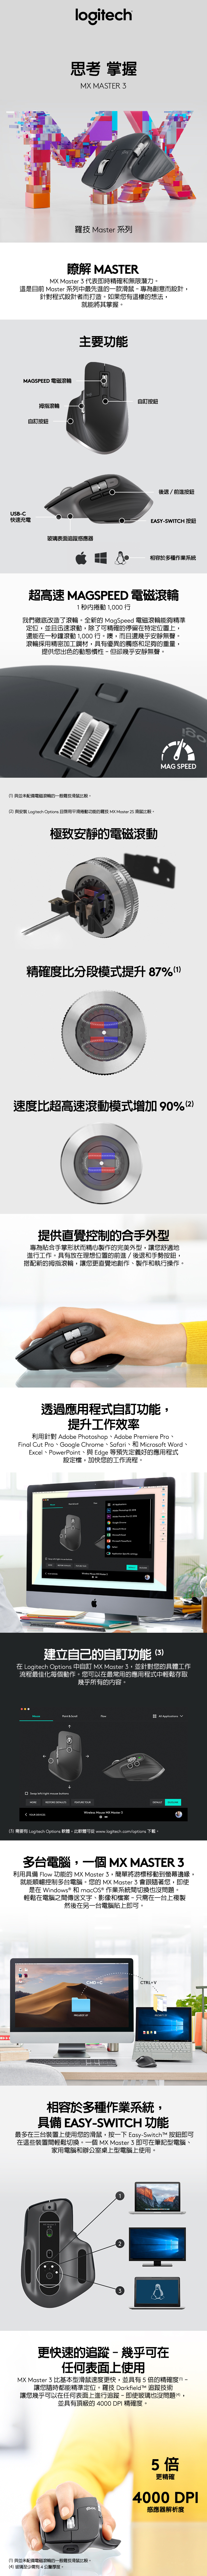 羅技Logitech MX Master 3 無線滑鼠(Mac專用) | 法雅客網路商店